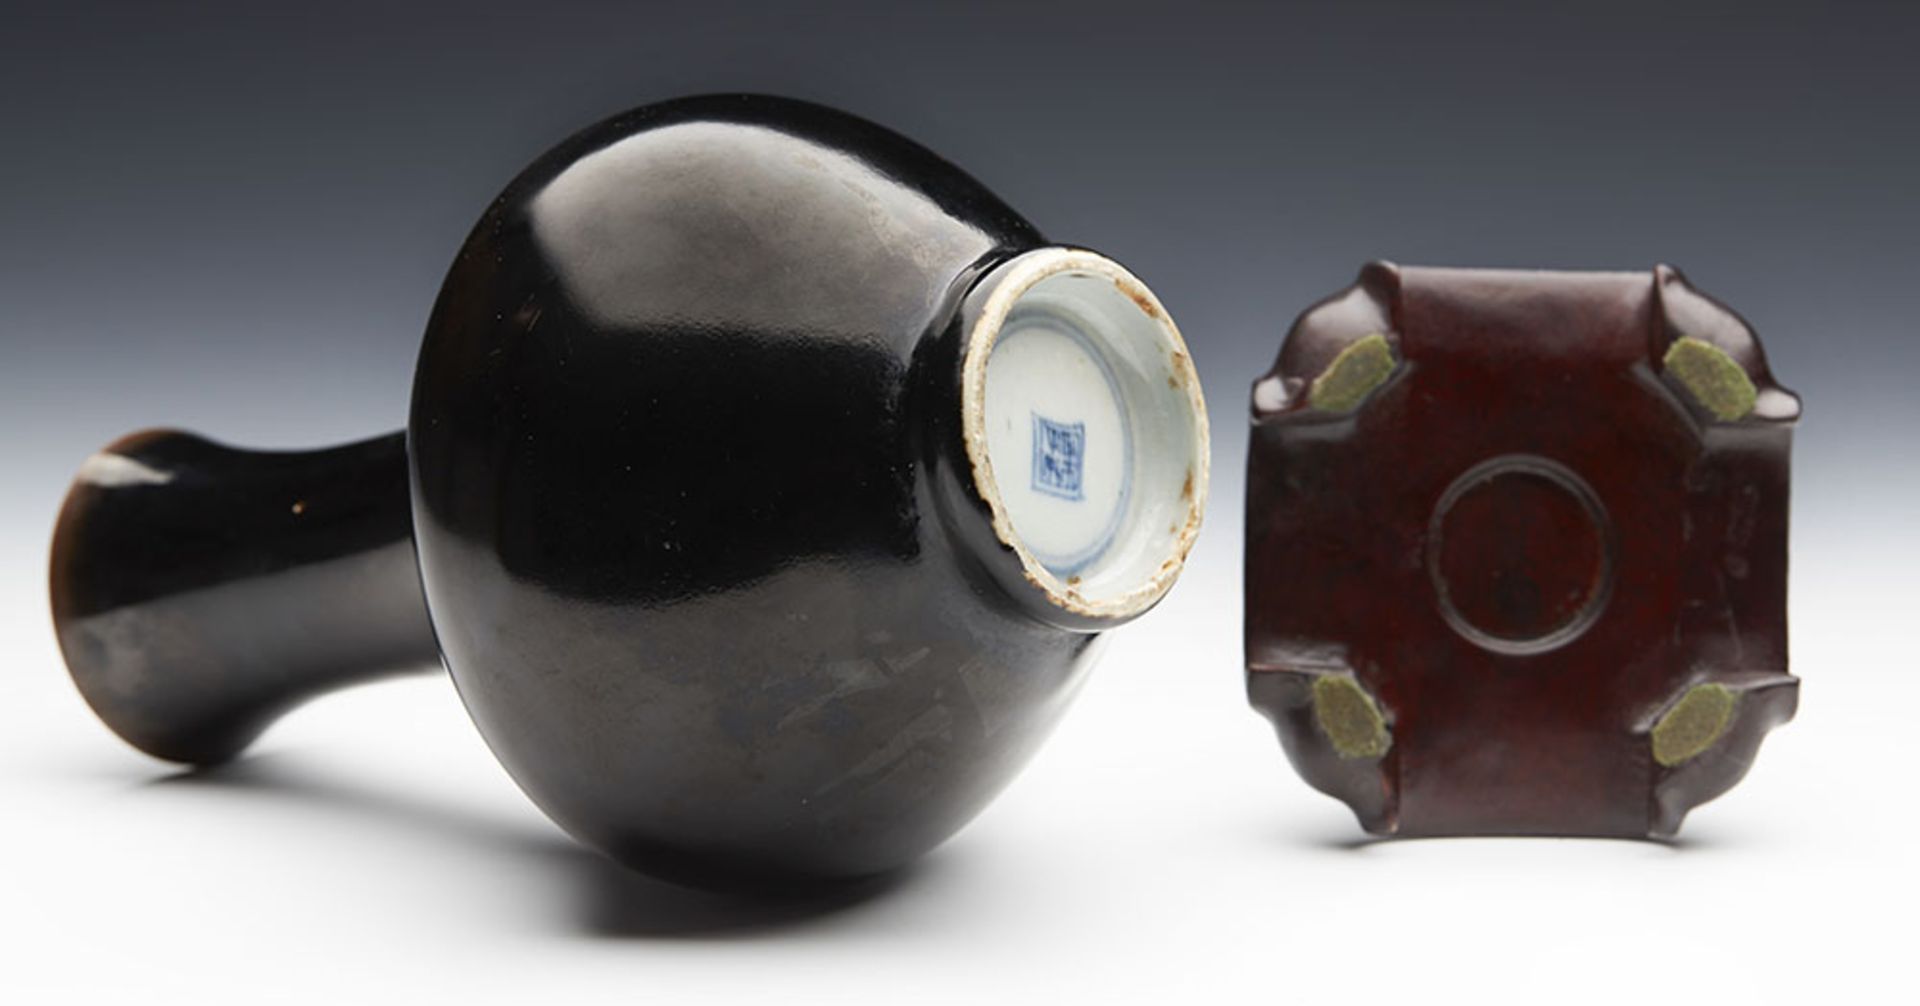 Antique Chinese Kangxi Brown/Black Glazed Bottle Vase 1662-1722 - Image 3 of 8